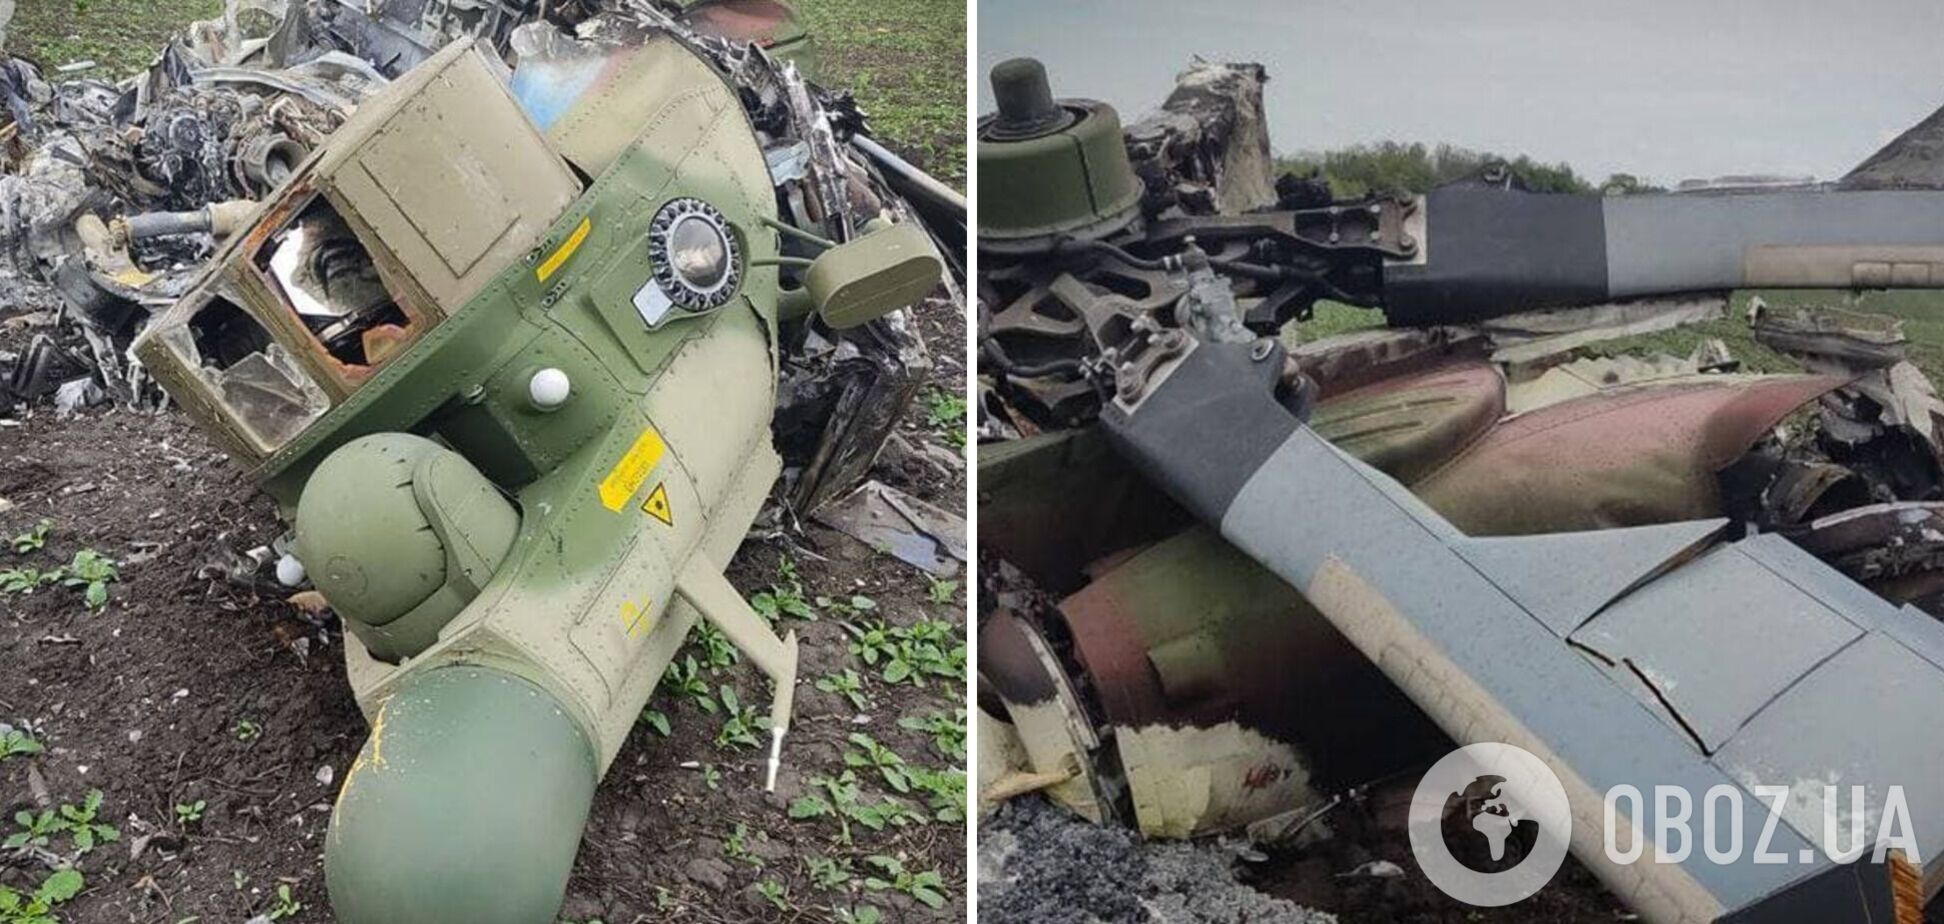 Нацгвардия показала фото сбитого на Харьковщине вертолета РФ